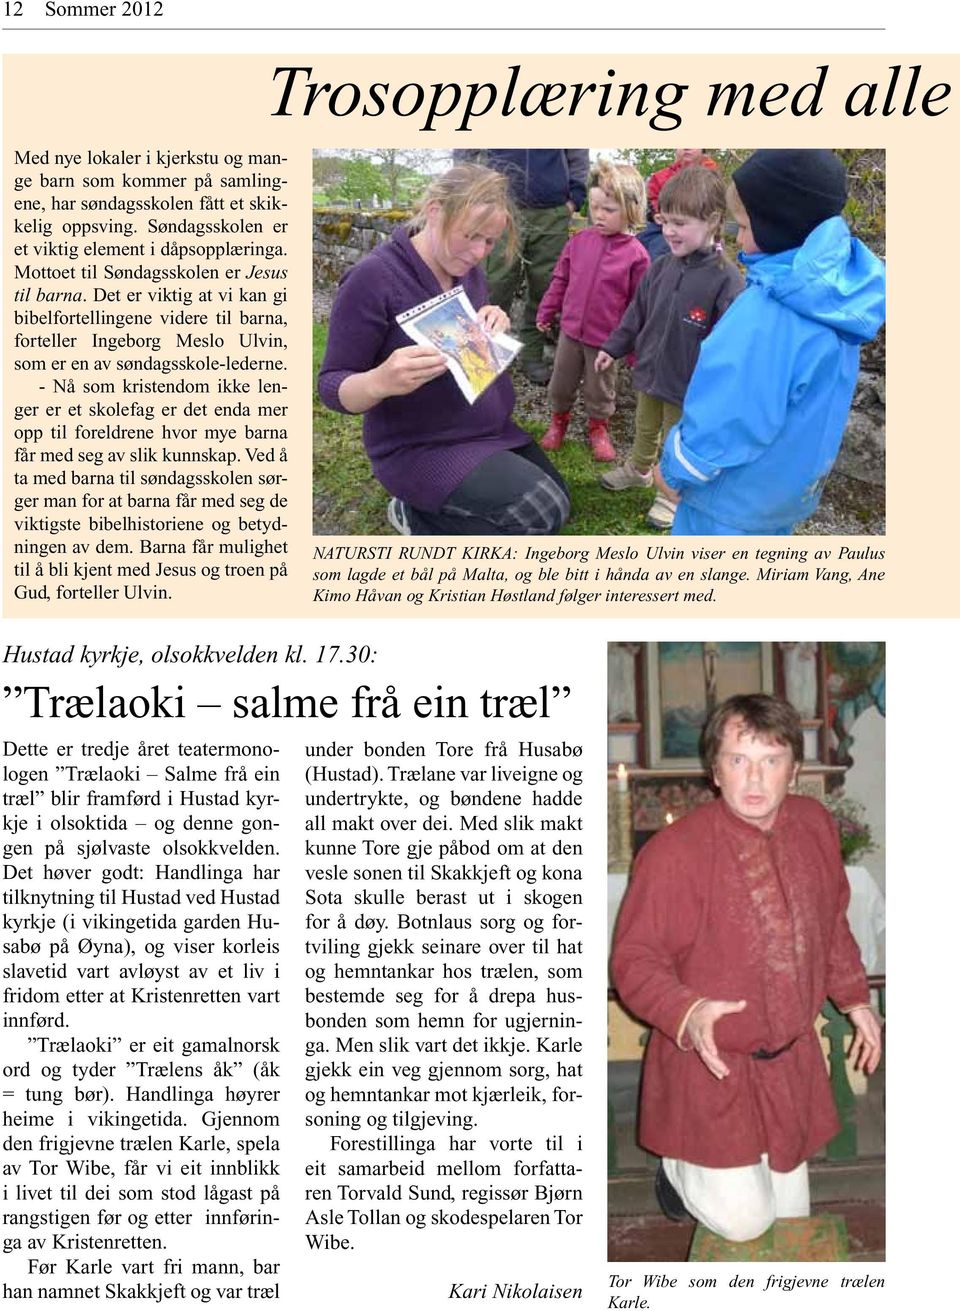 Det er viktig at vi kan gi bibelfortellingene videre til barna, forteller Ingeborg Meslo Ulvin, som er en av søndagsskole-lederne.